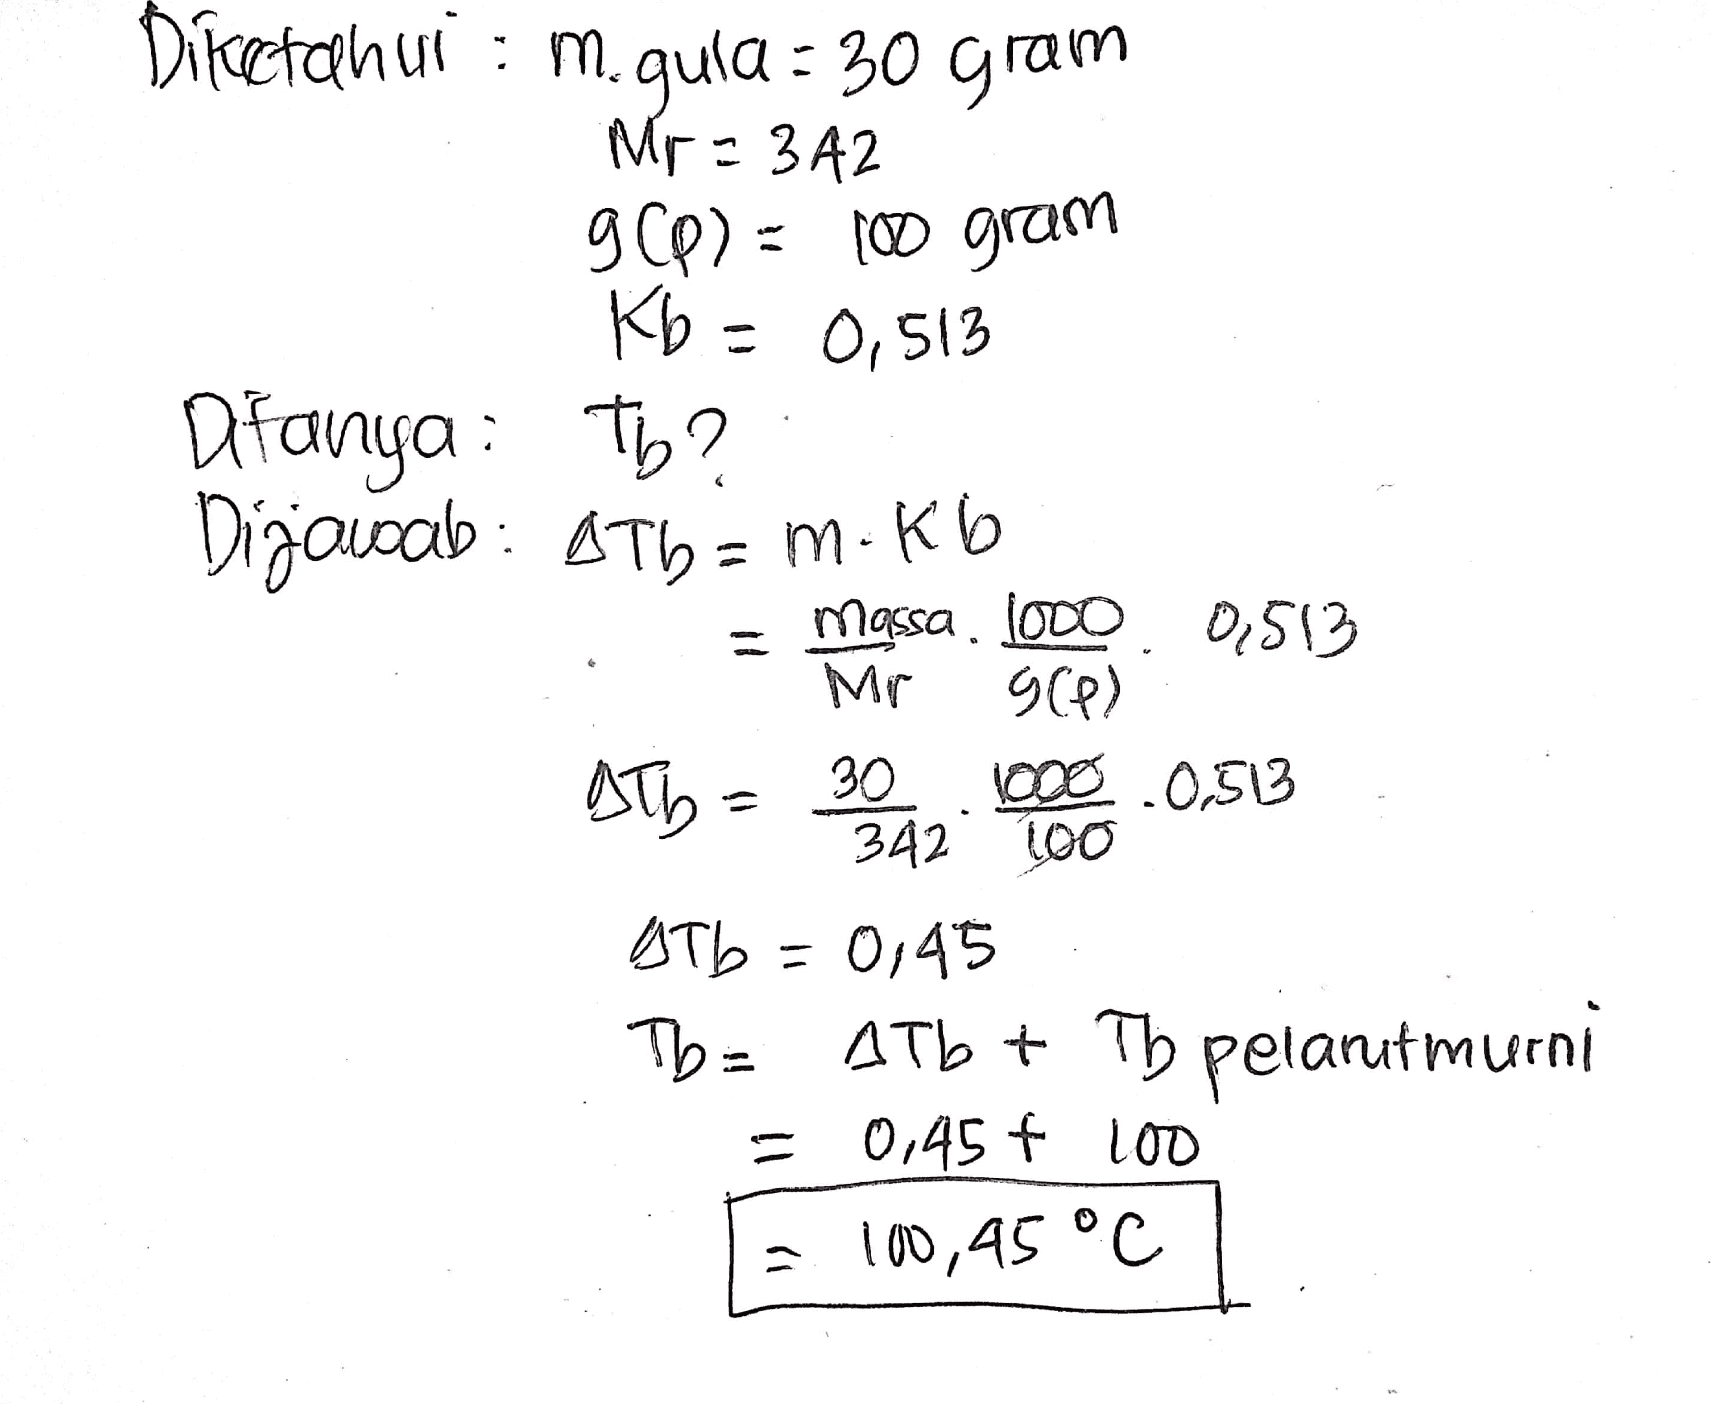 Diketahui : m.gula = 30 gram Mr: 342 Mr 900) = 100 gram = Ditanya: Tb? Dijawab: A ThamKo = massa. 1000. 0,513 gle) 1000.0,513 342 100 Atb = 0,45 Tb= 4Tb + Th pelarut murni = 0,45 € LOD = 100,45 °C ATD= 30 